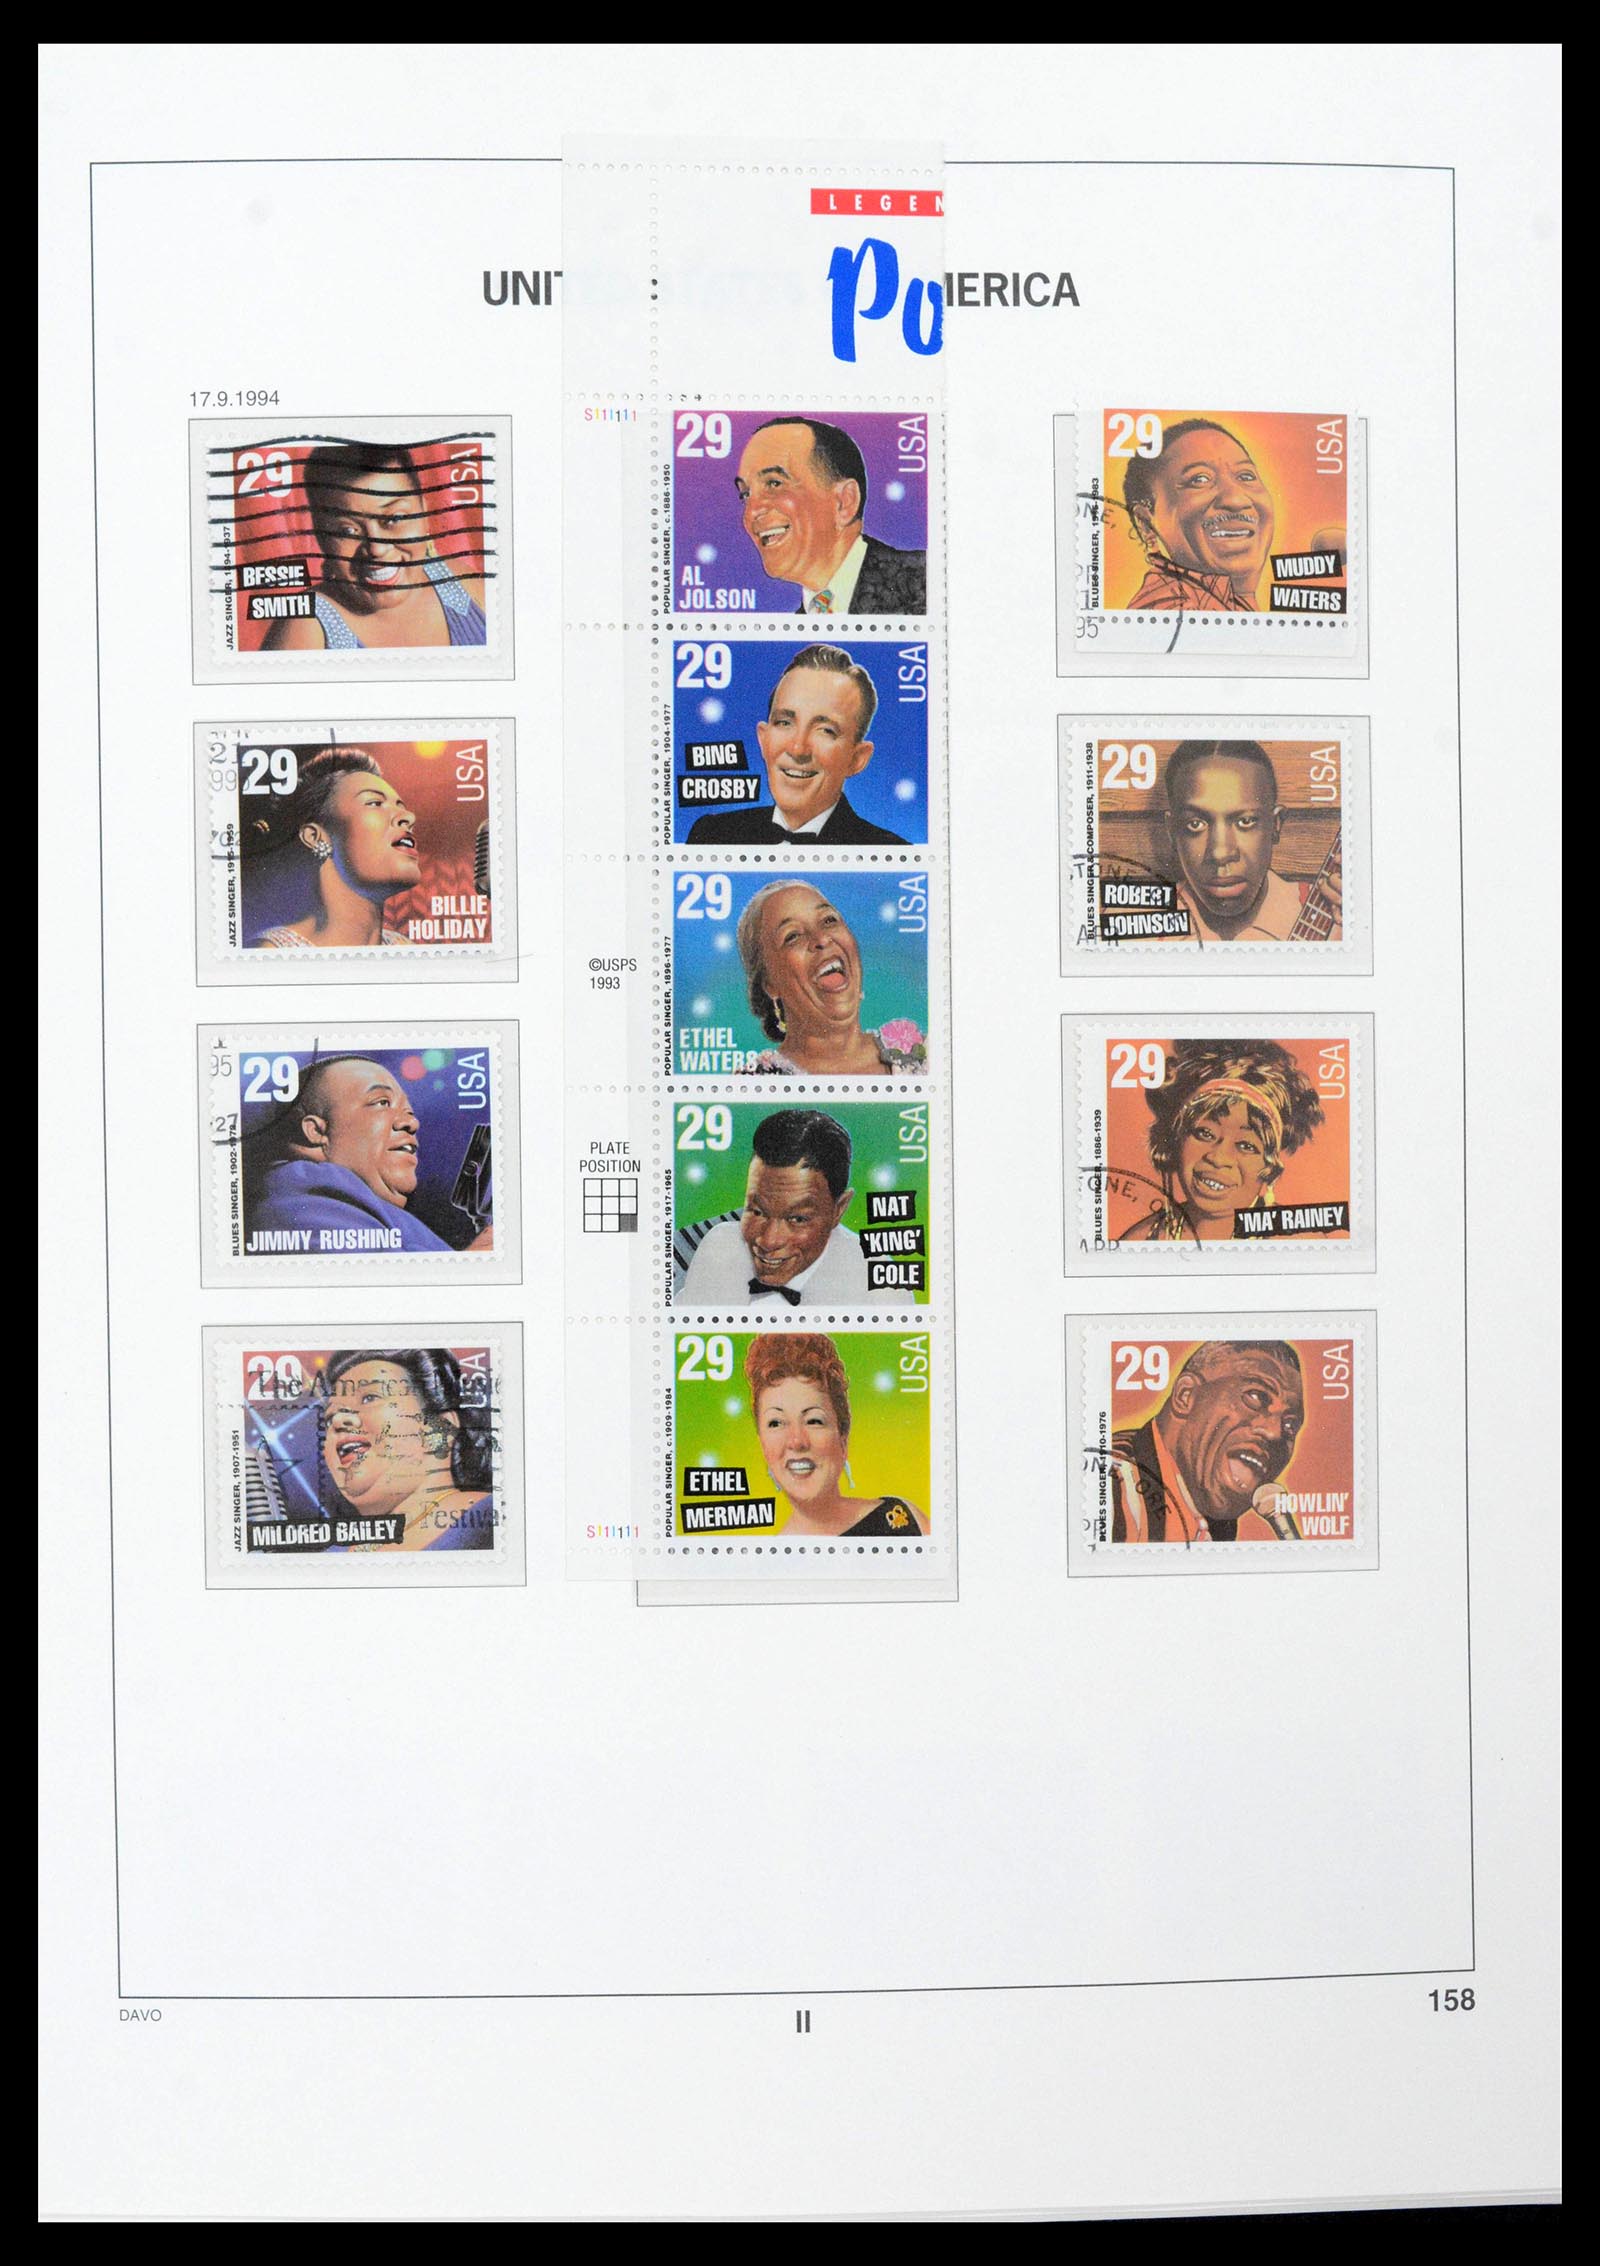 39349 0048 - Stamp collection 39349 USA 1989-2021!